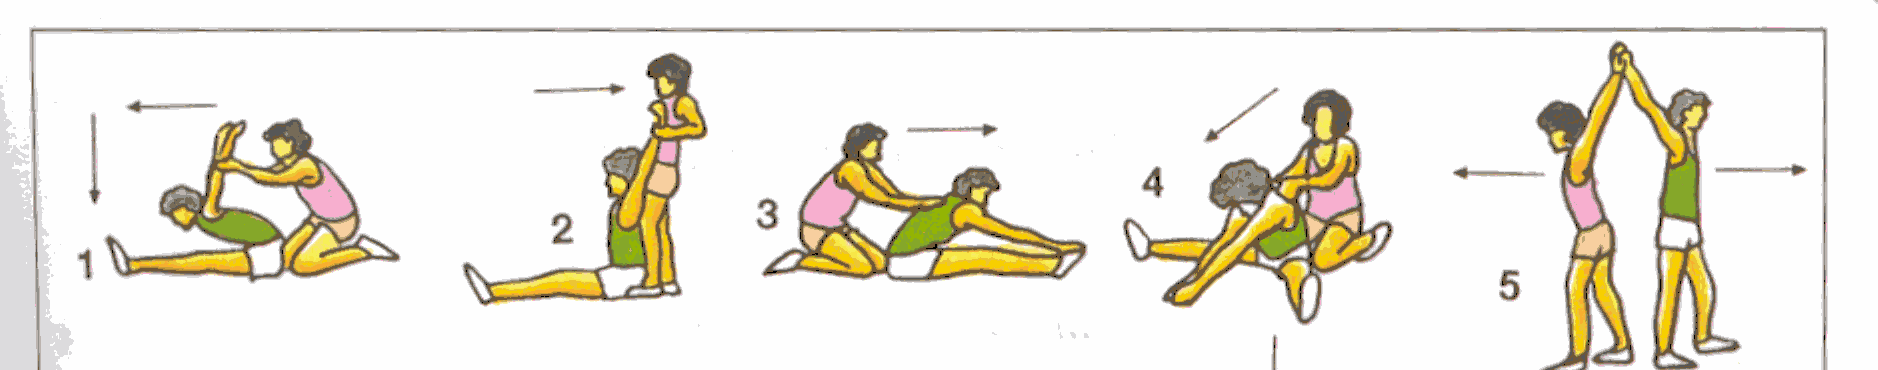 B) Ejercicios estáticos En los ejercicios estáticos, también llamados estiramientos, se adopta una posición que obliga a estirar un grupo muscular y se mantiene la posición de 12 a 20 para que sea